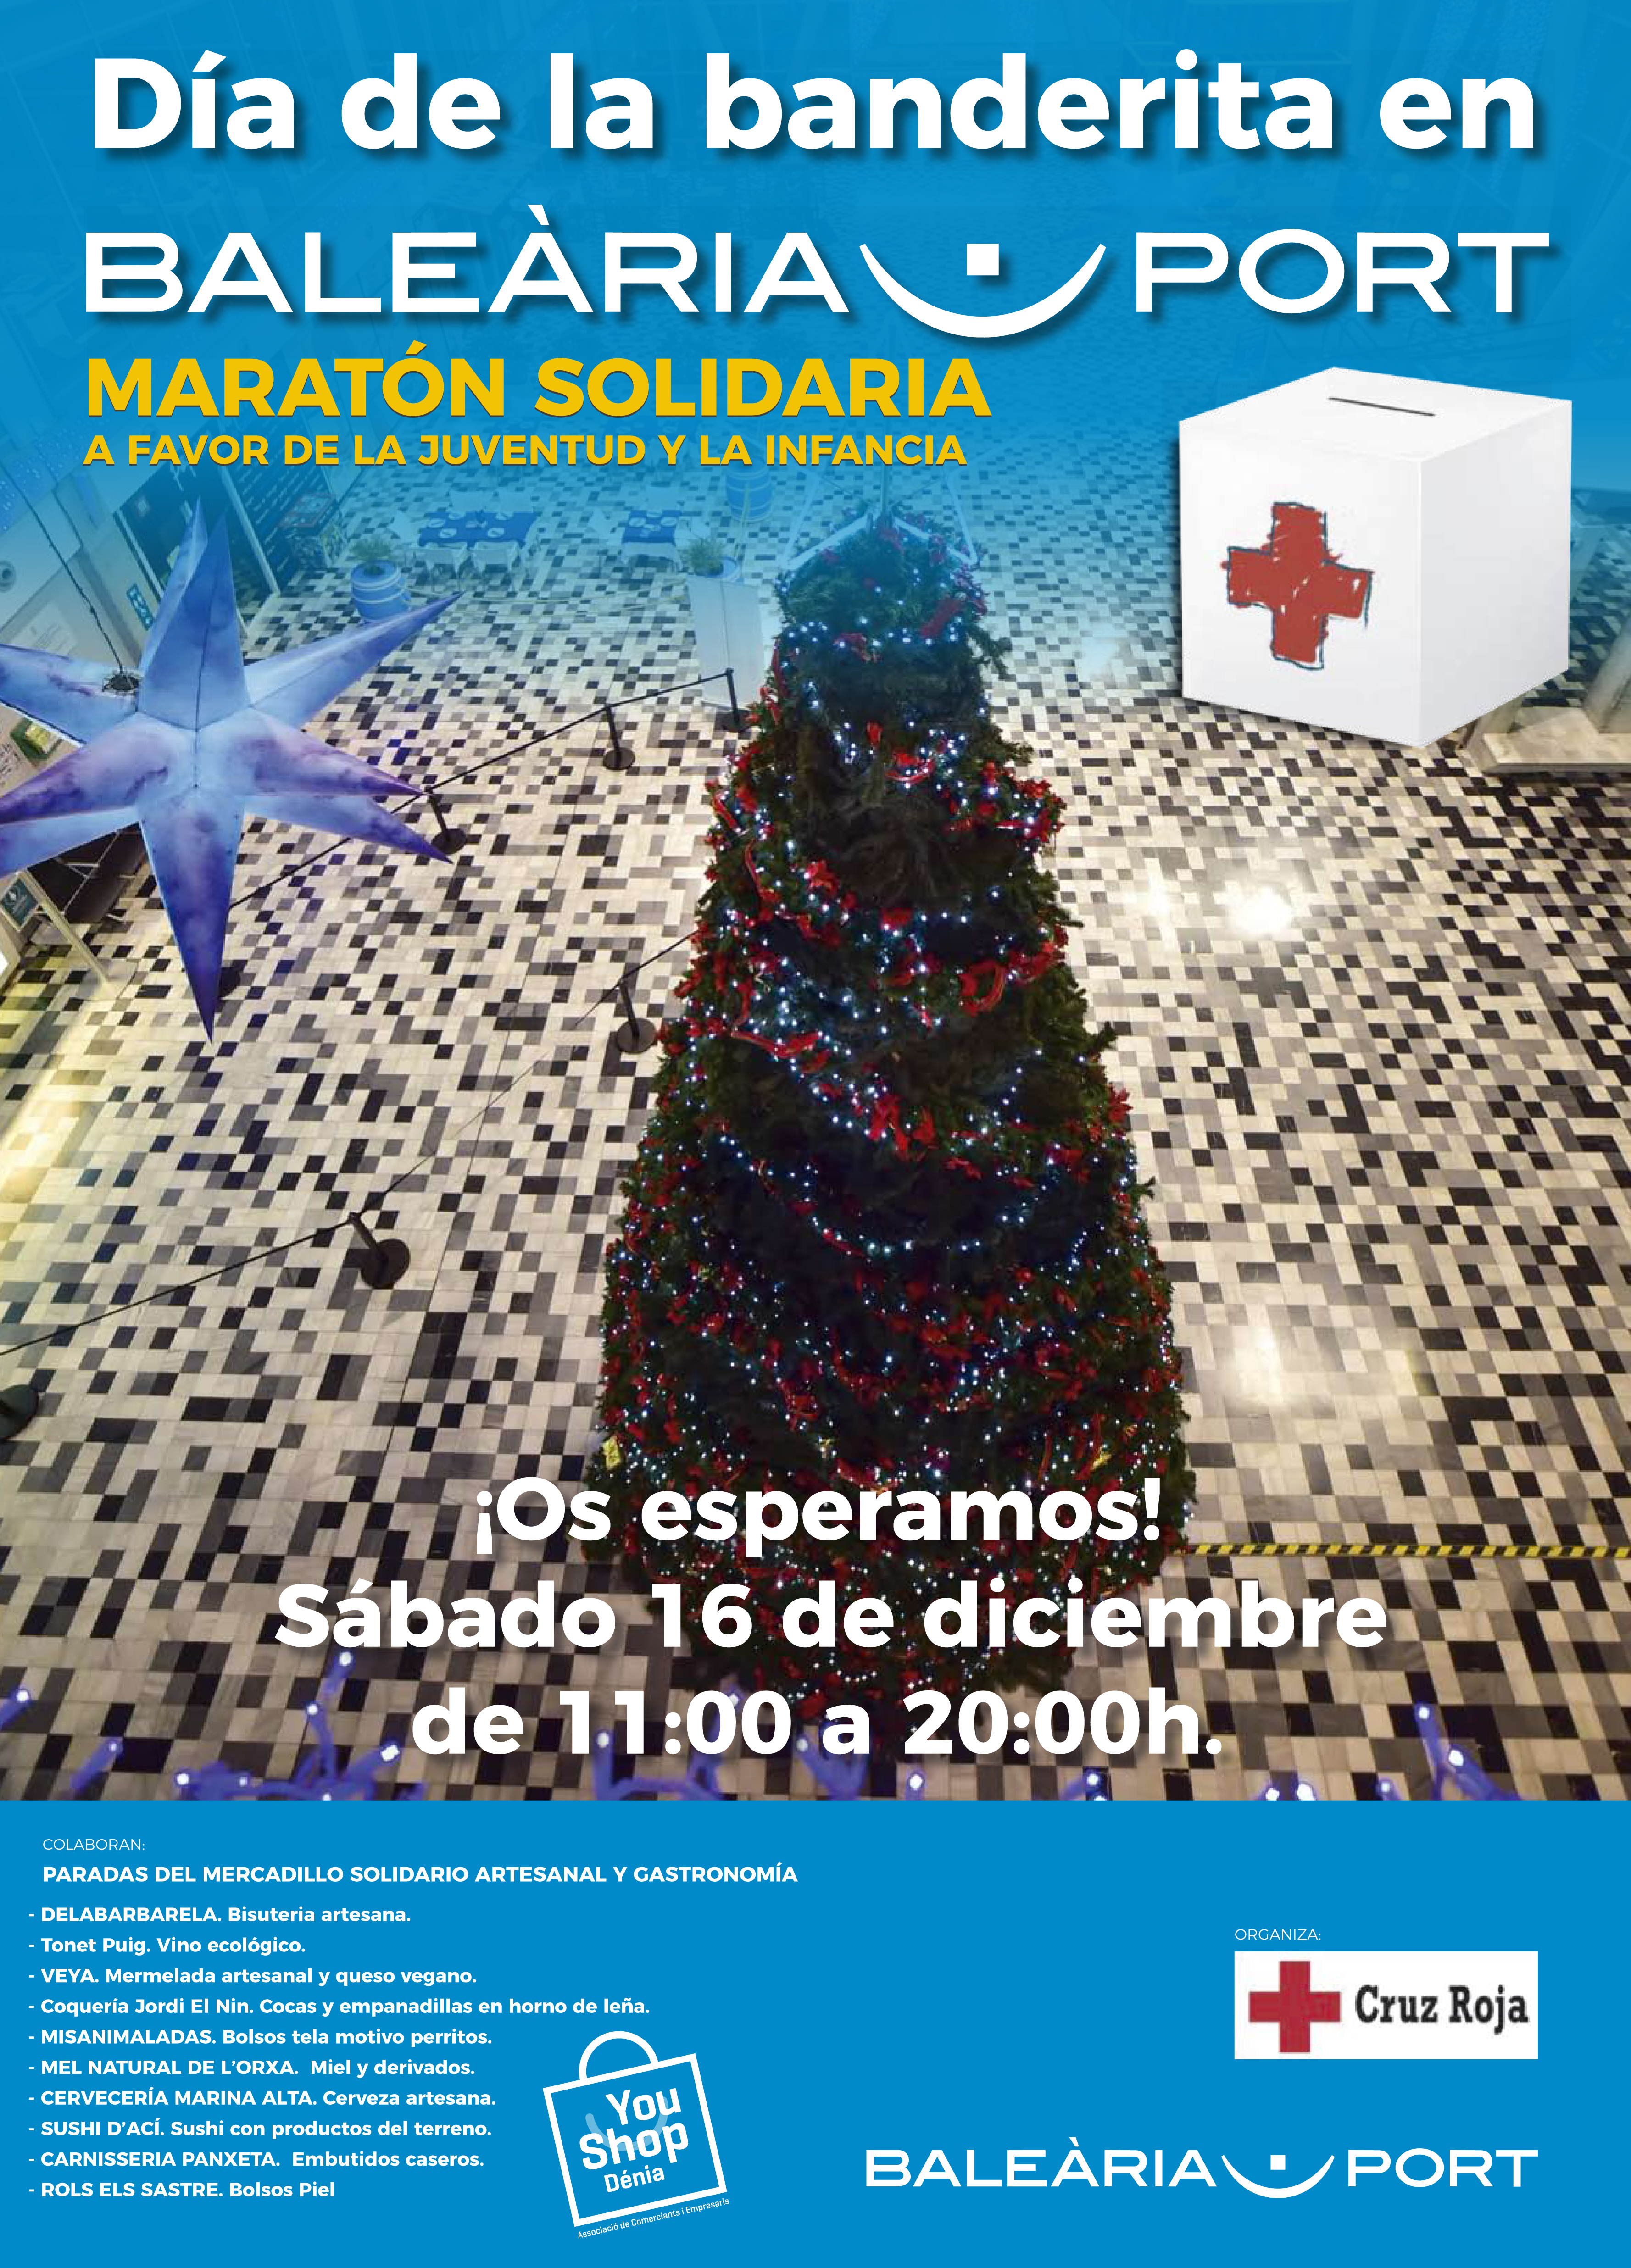 Maratón solidario: Dia de la Banderita en Baleària Port